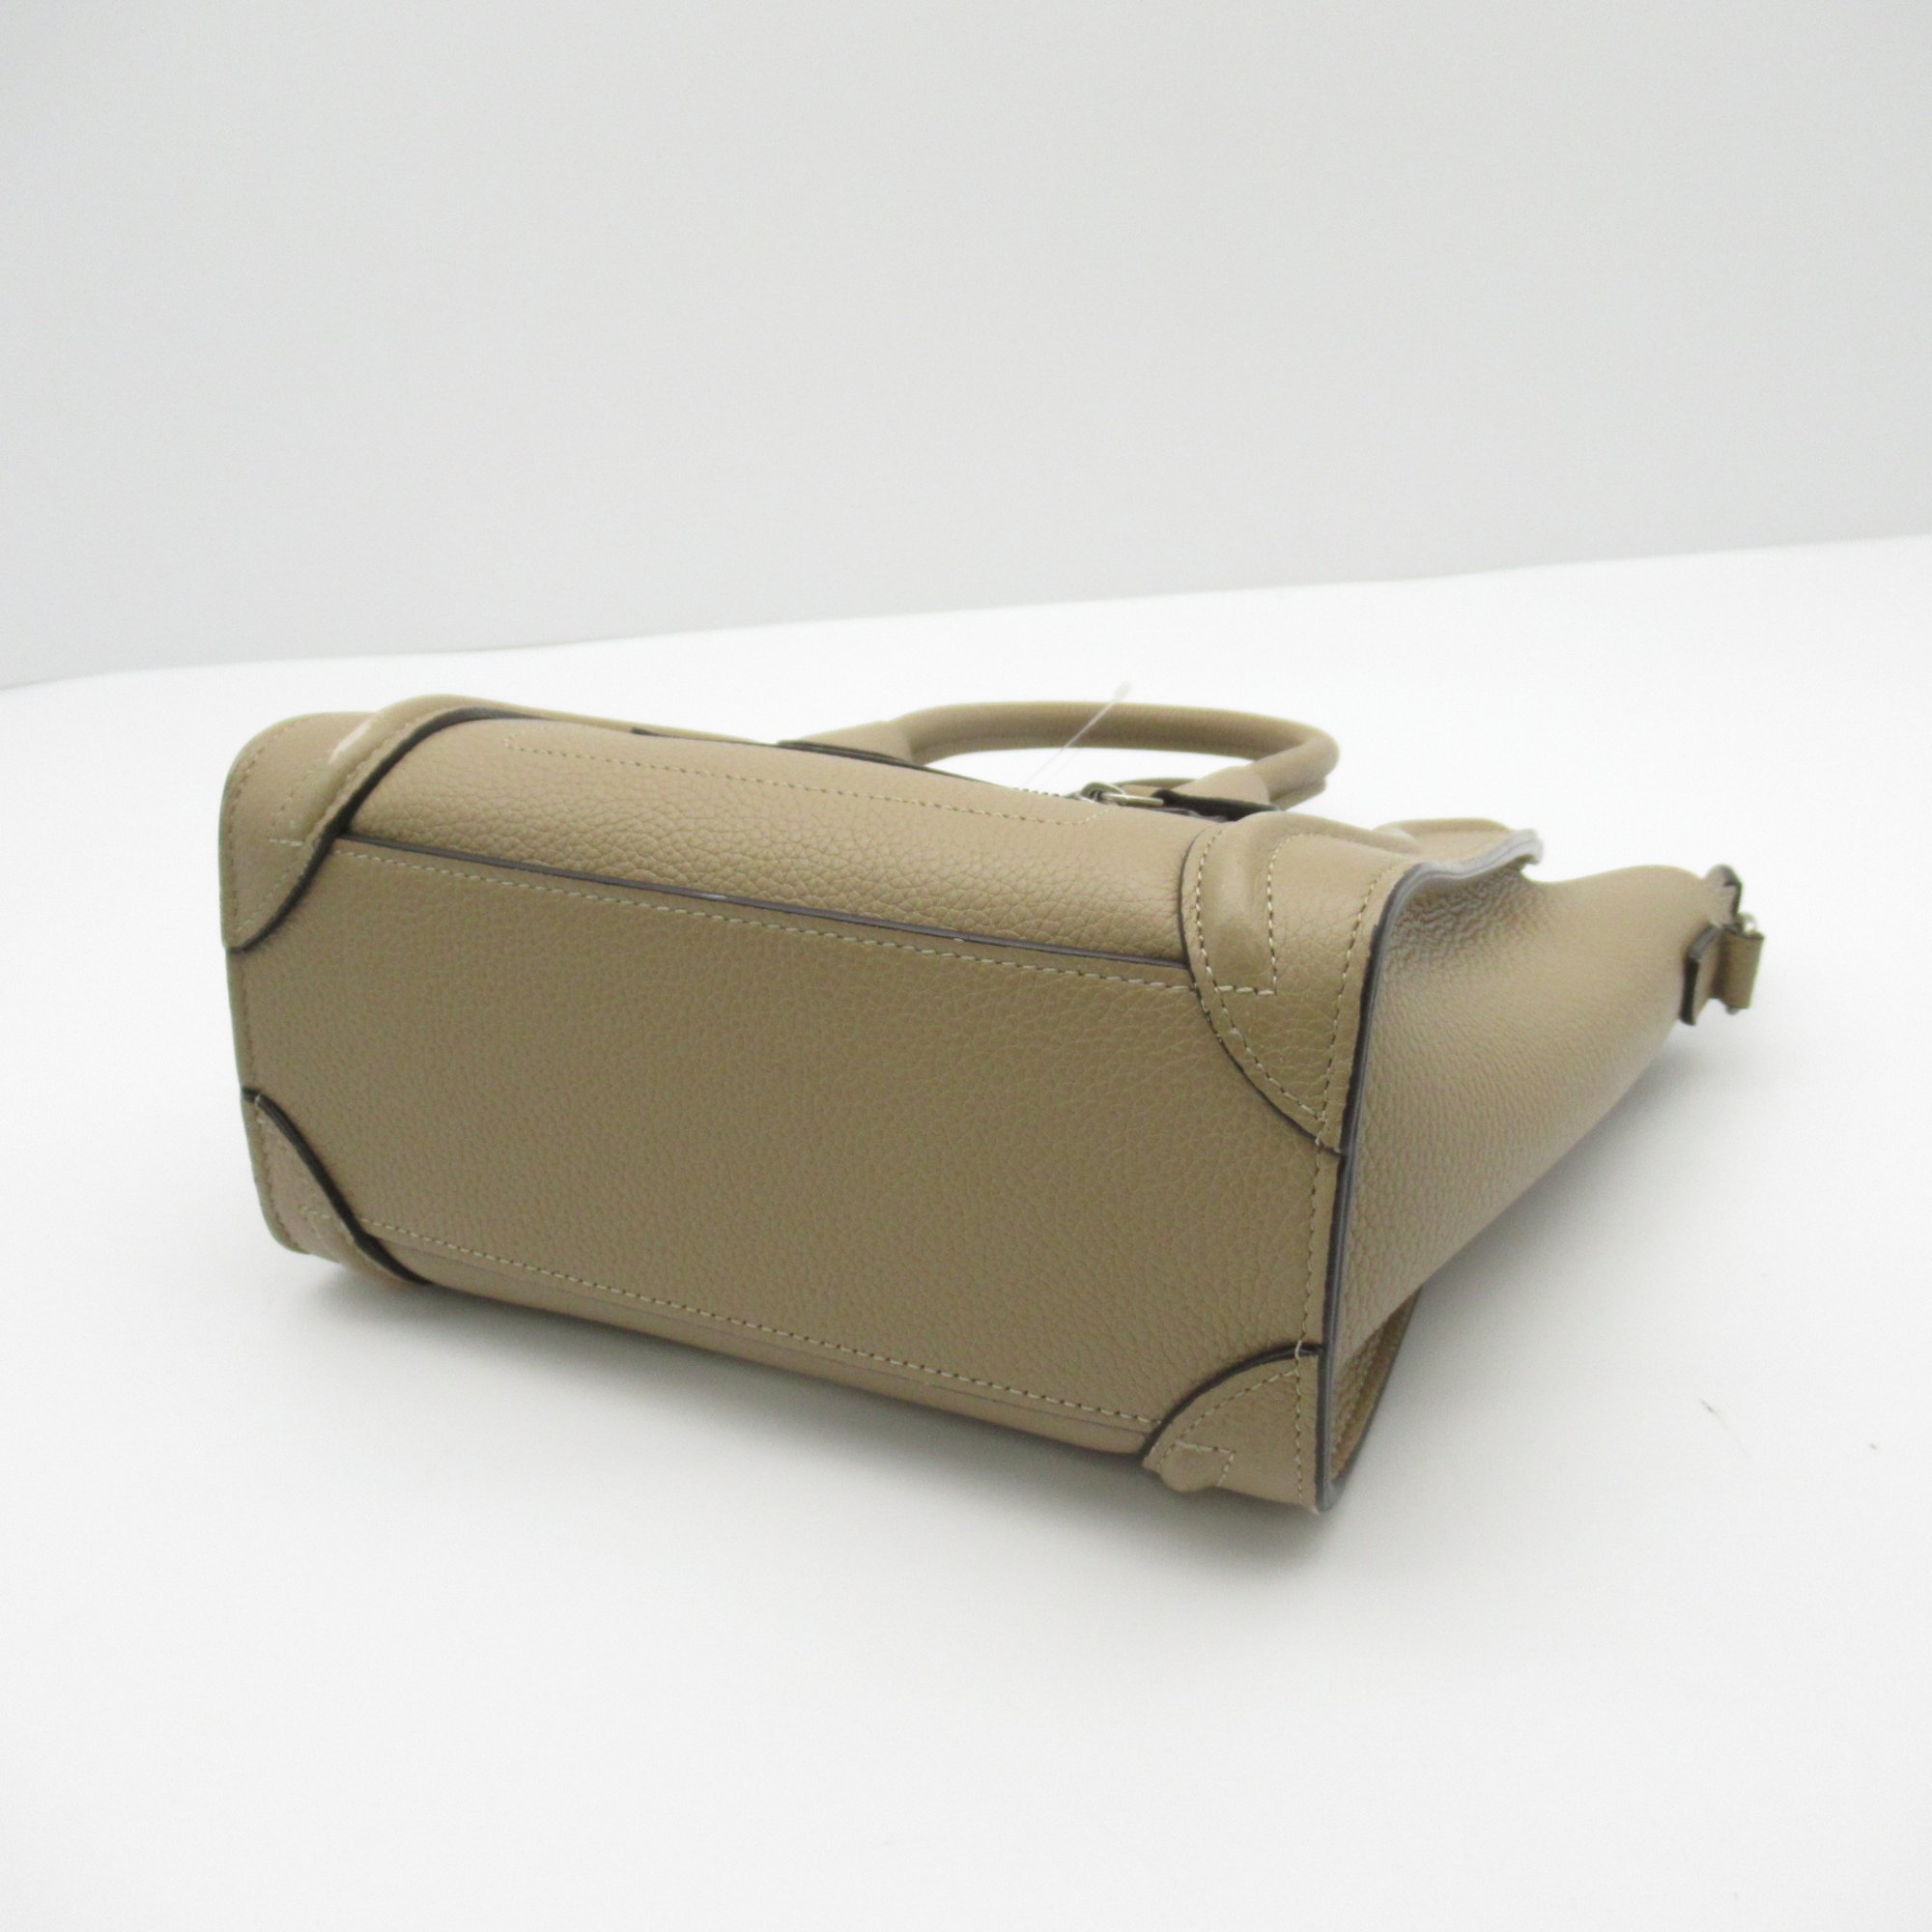 CELINE Luggage Nano Shoulder Bag Beige leather W-AT2272